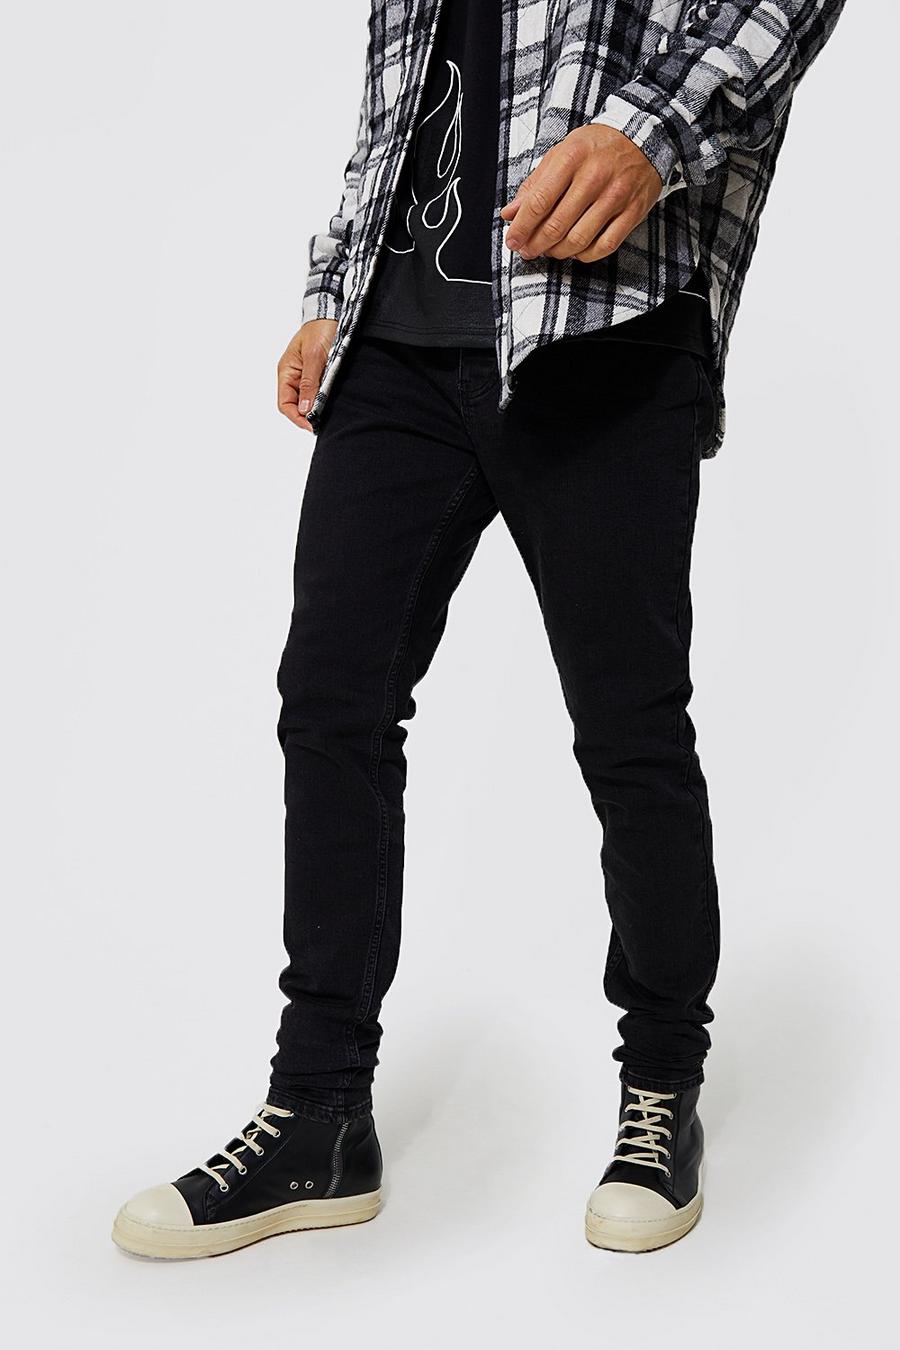 שחור דהוי ג'ינס סקיני לגברים גבוהים image number 1